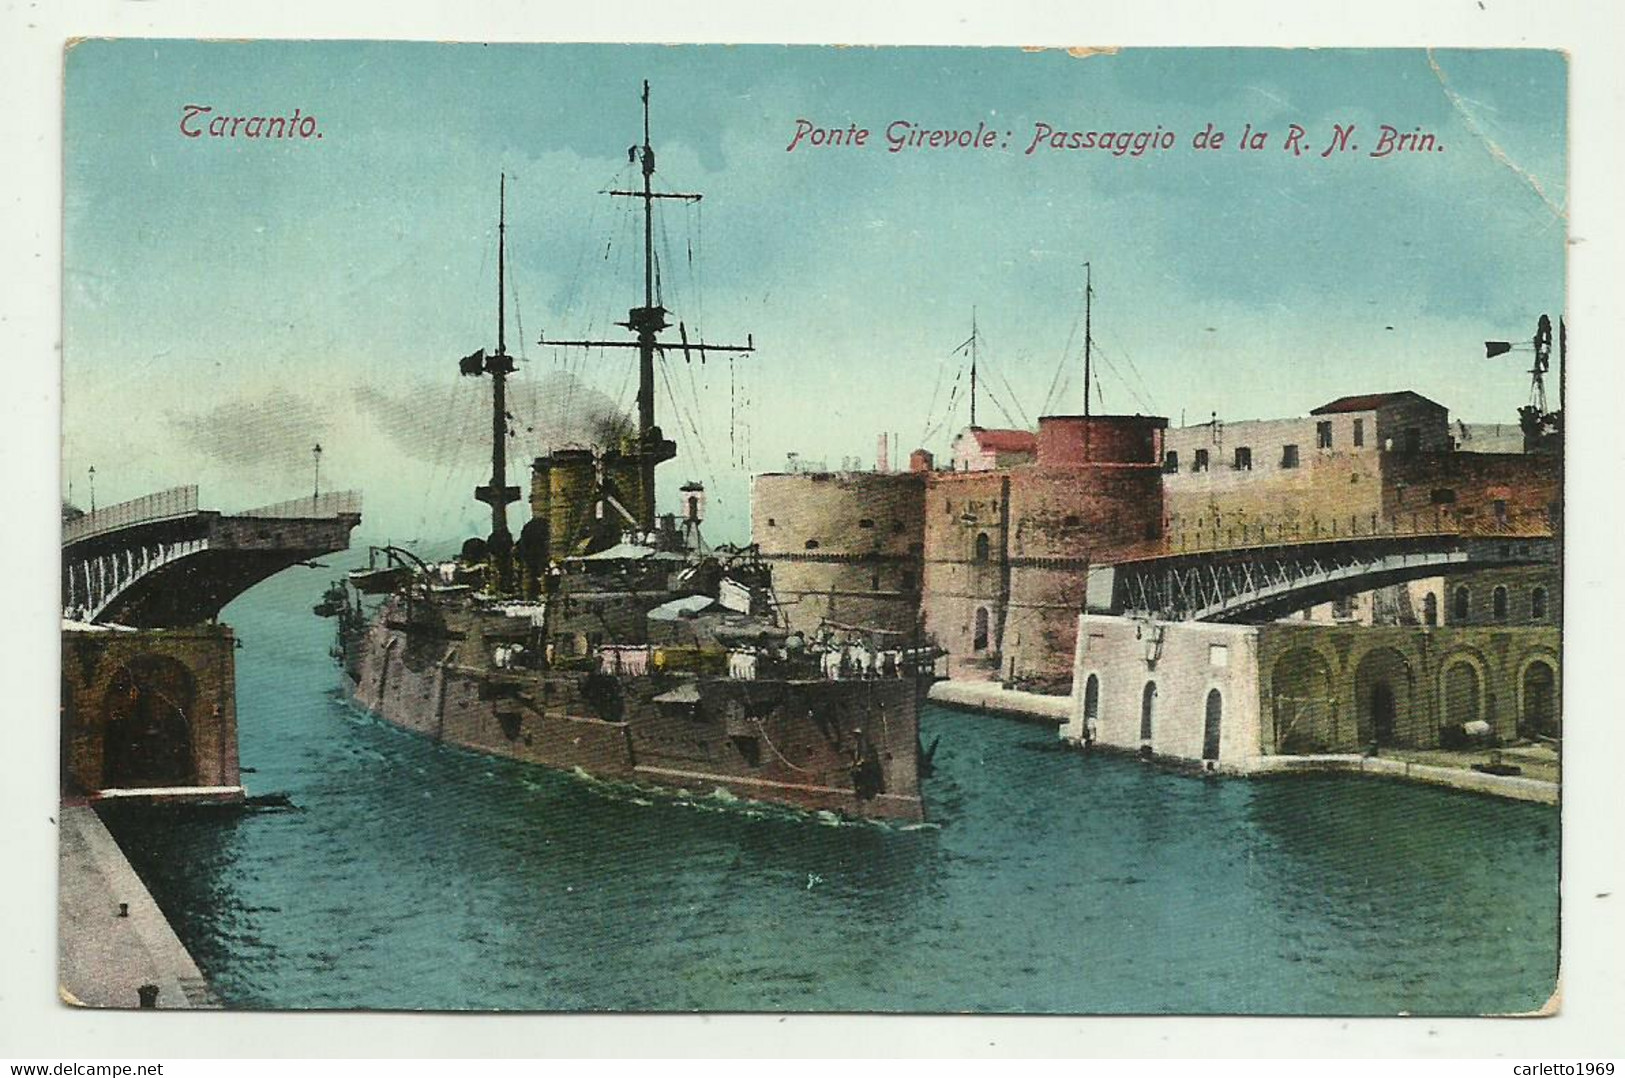 TARANTO - PONTE GIREVOLE: PASSAGGIO DE LA R.N. BRIN 1913  - VIAGGIATA  FP - Taranto